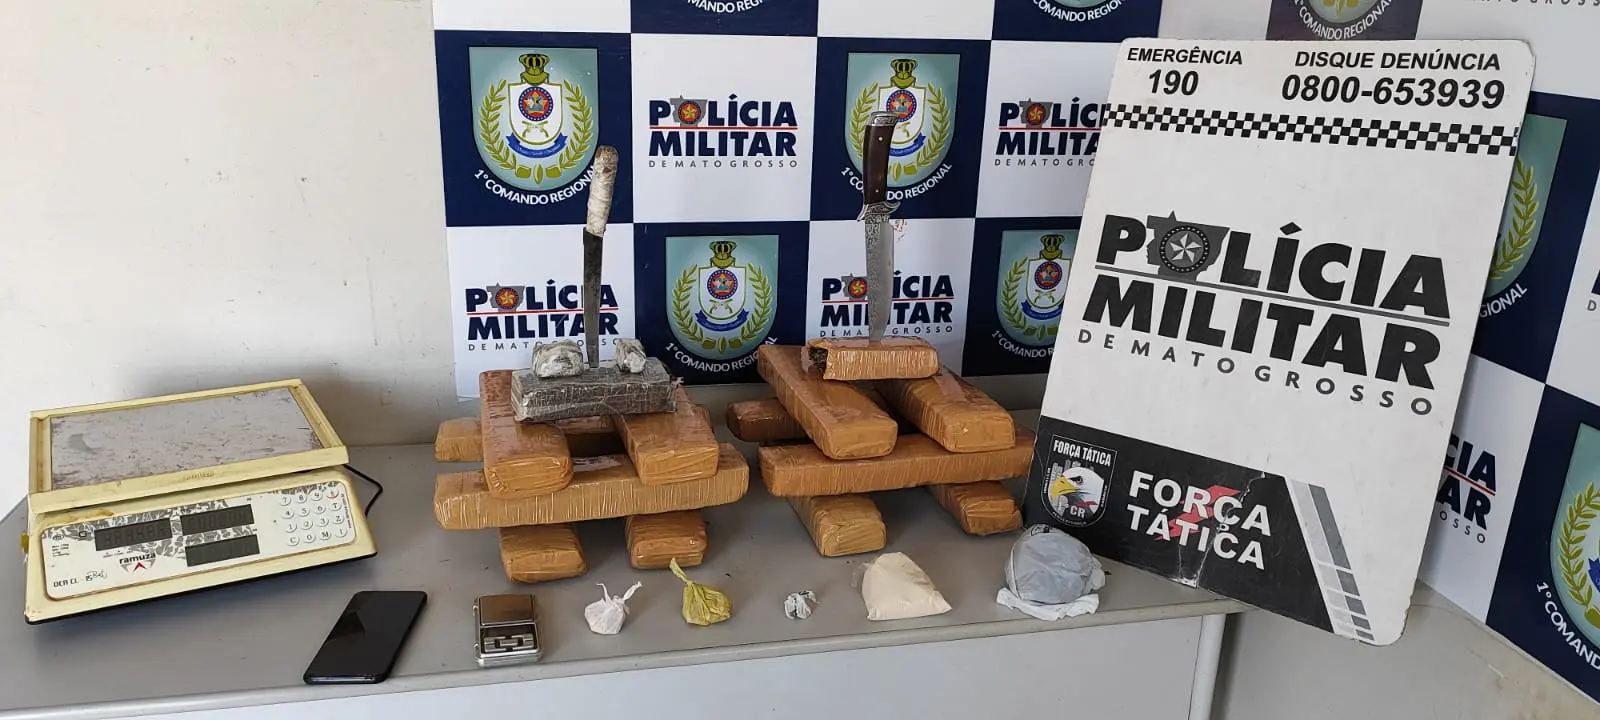 Operação policial em Cuiabá apreende jovem com 14 tabletes de maconha